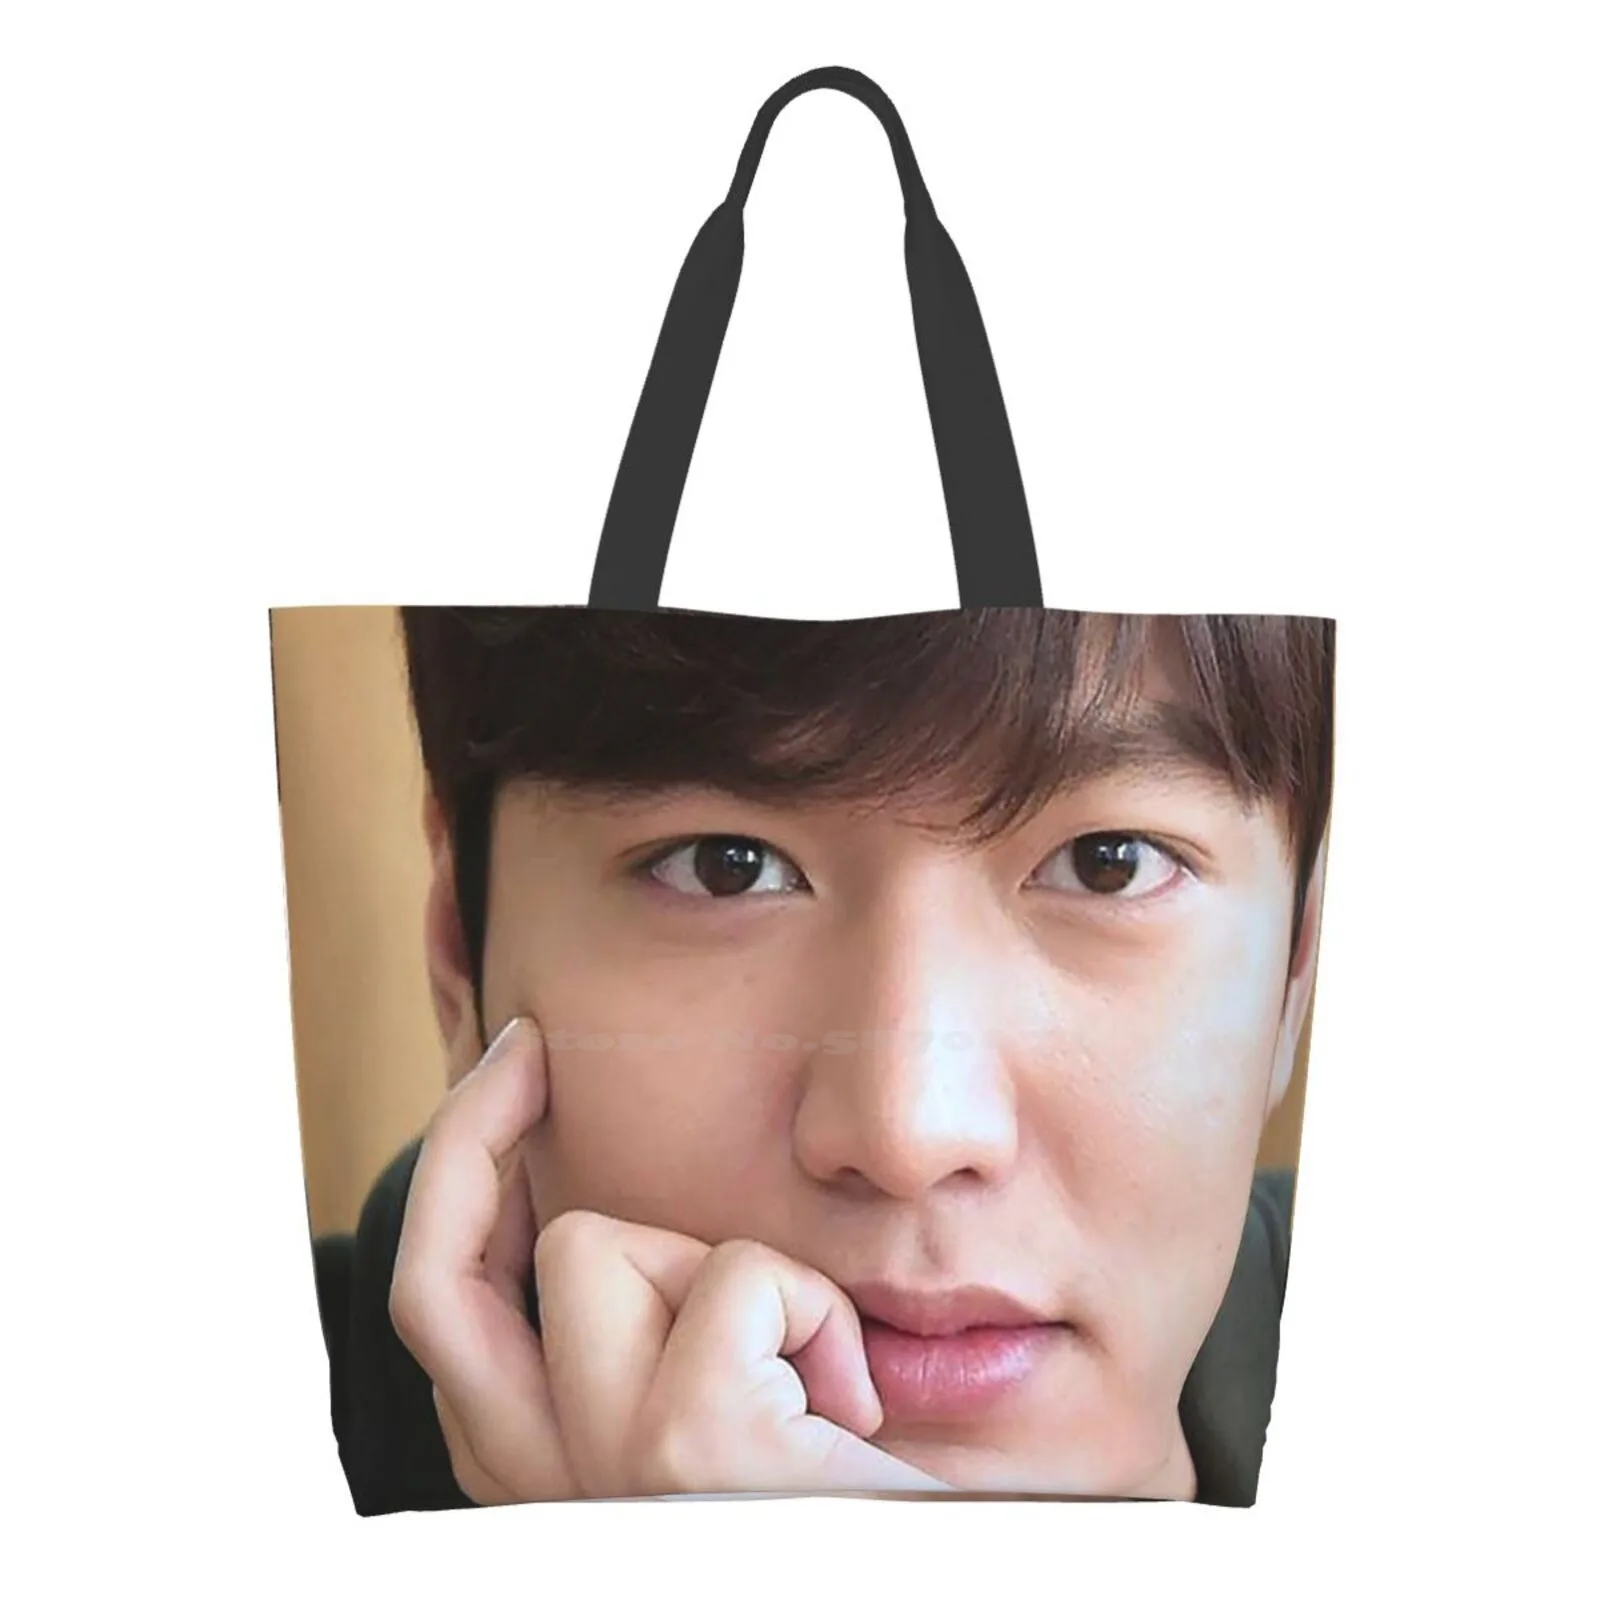 

Lee Min Ho Reusable Shopping Bag Tote Large Size Lee Min Ho Girlfriend Lee Min Ho The King Lee Min Ho Age Lee Min Ho Net Worth